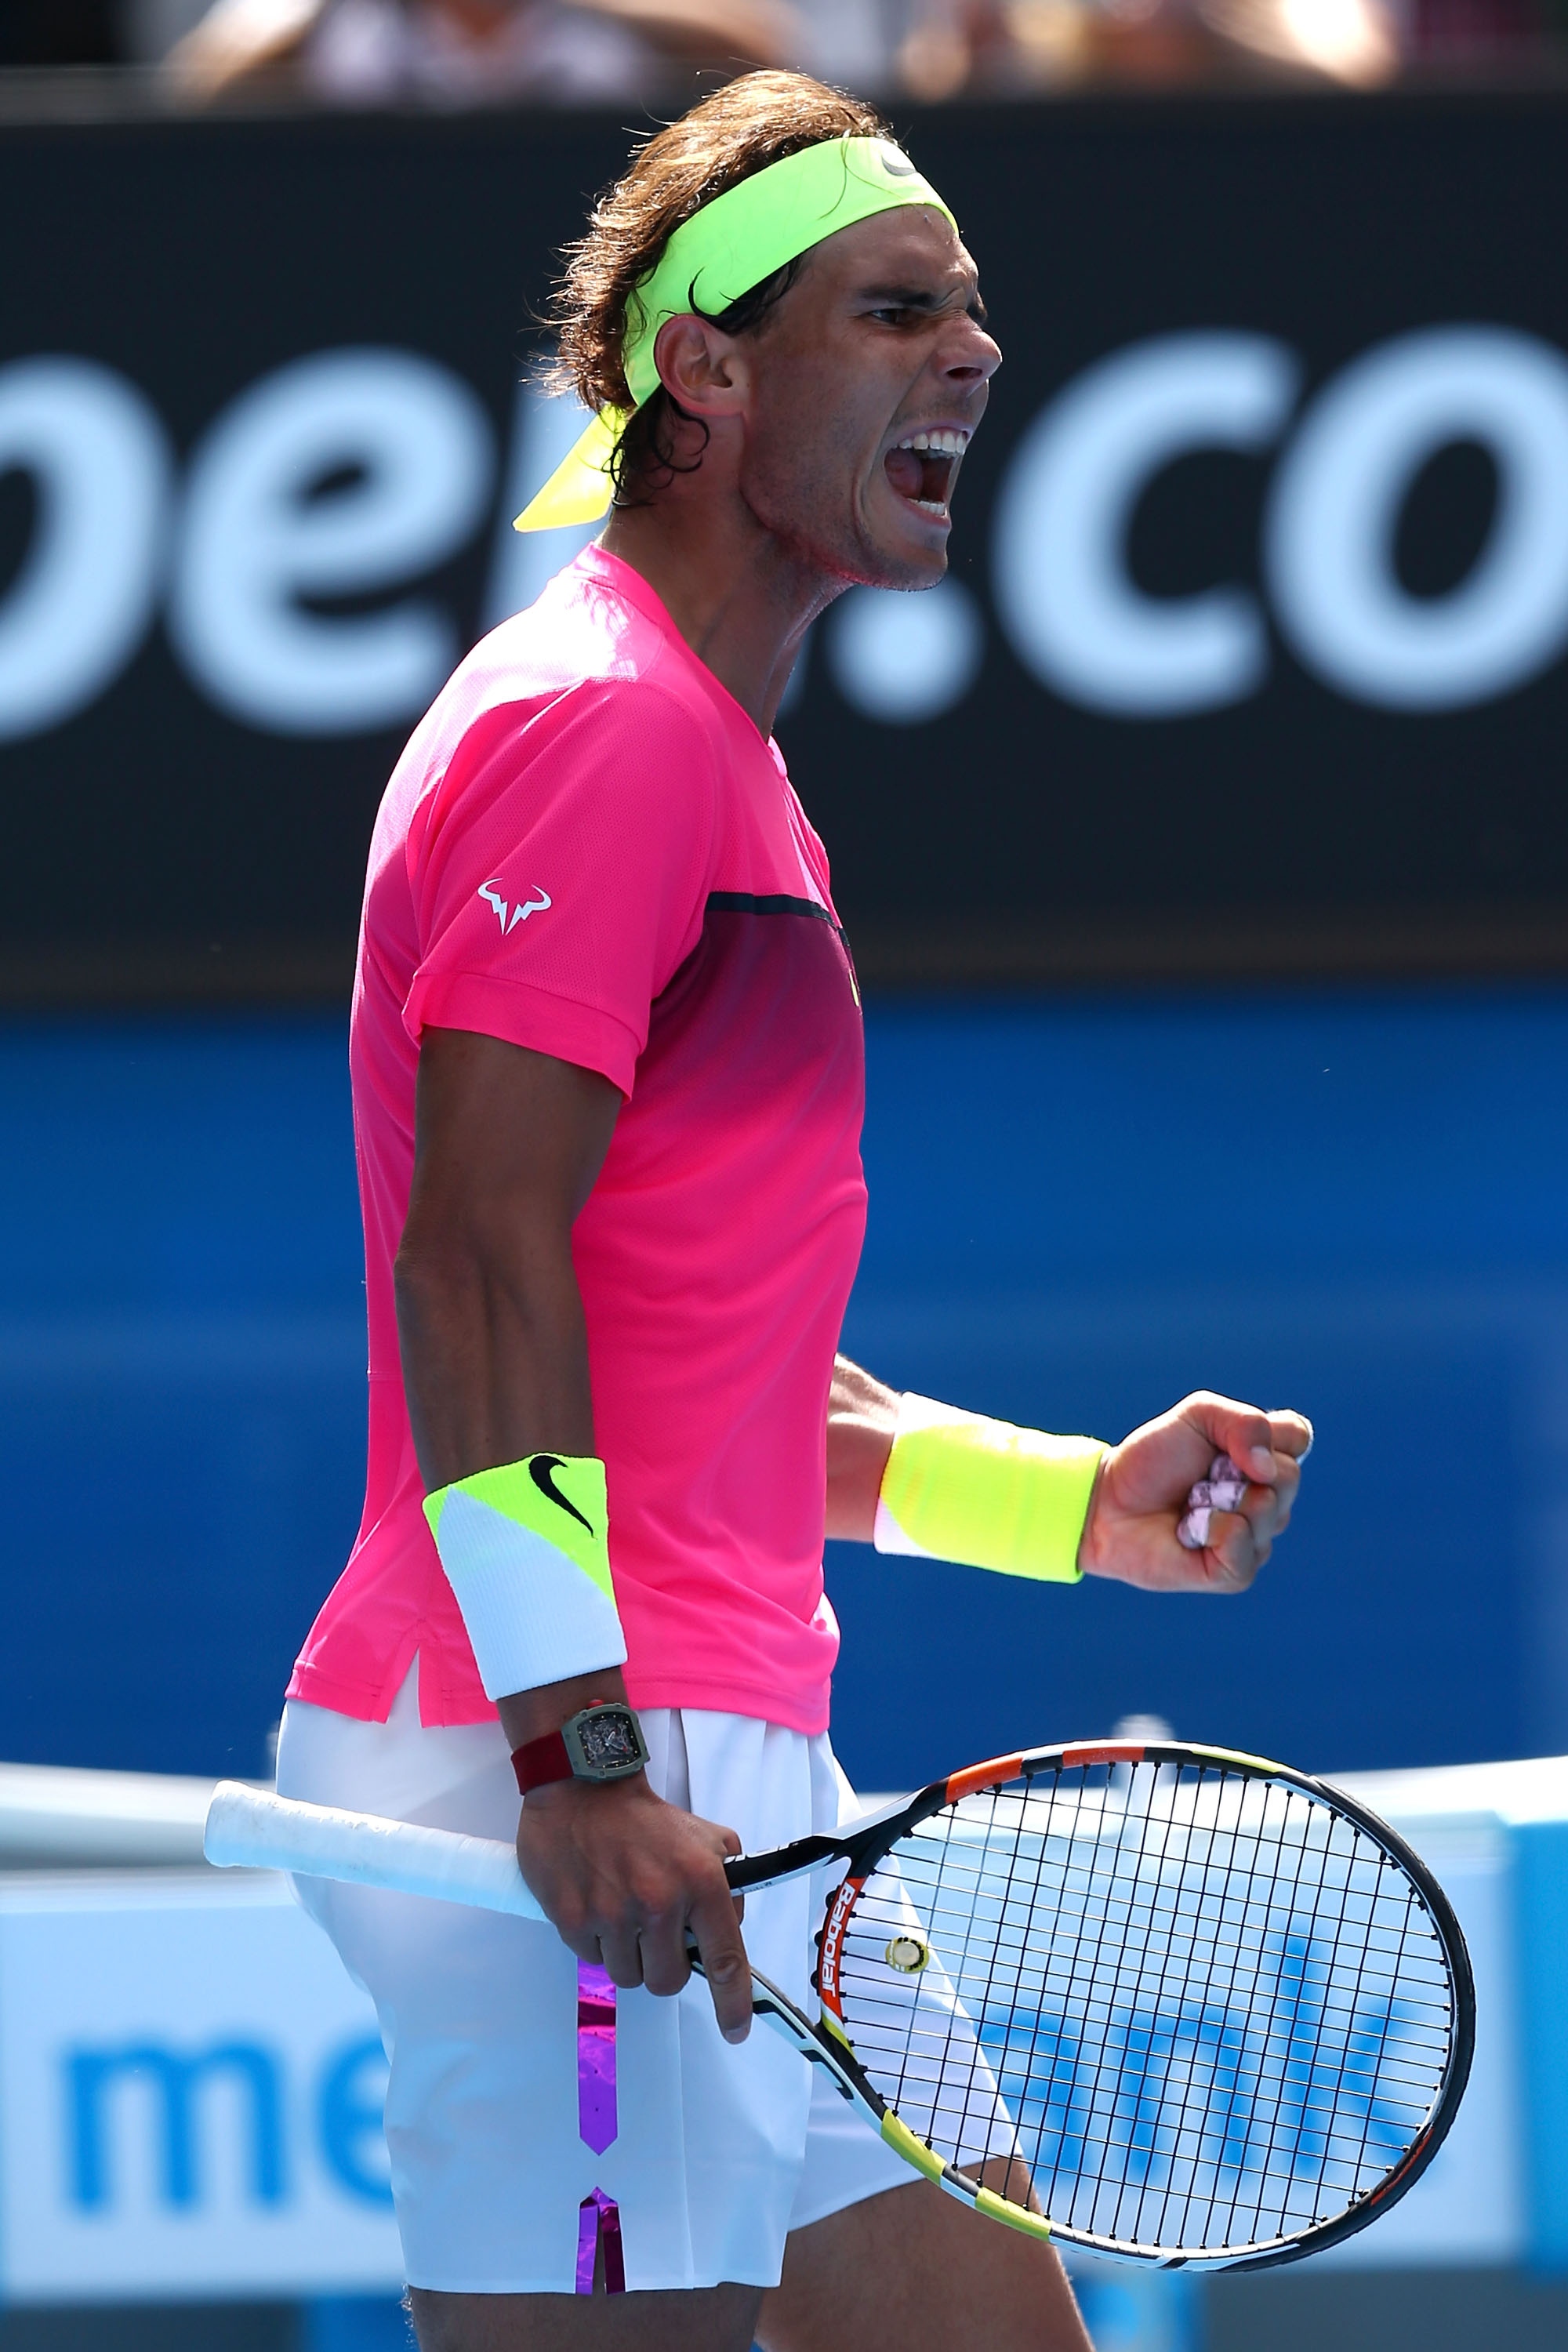 Rafael Nadal vs Mikhail Youzhny Open de Australia 2015 Pict. 20